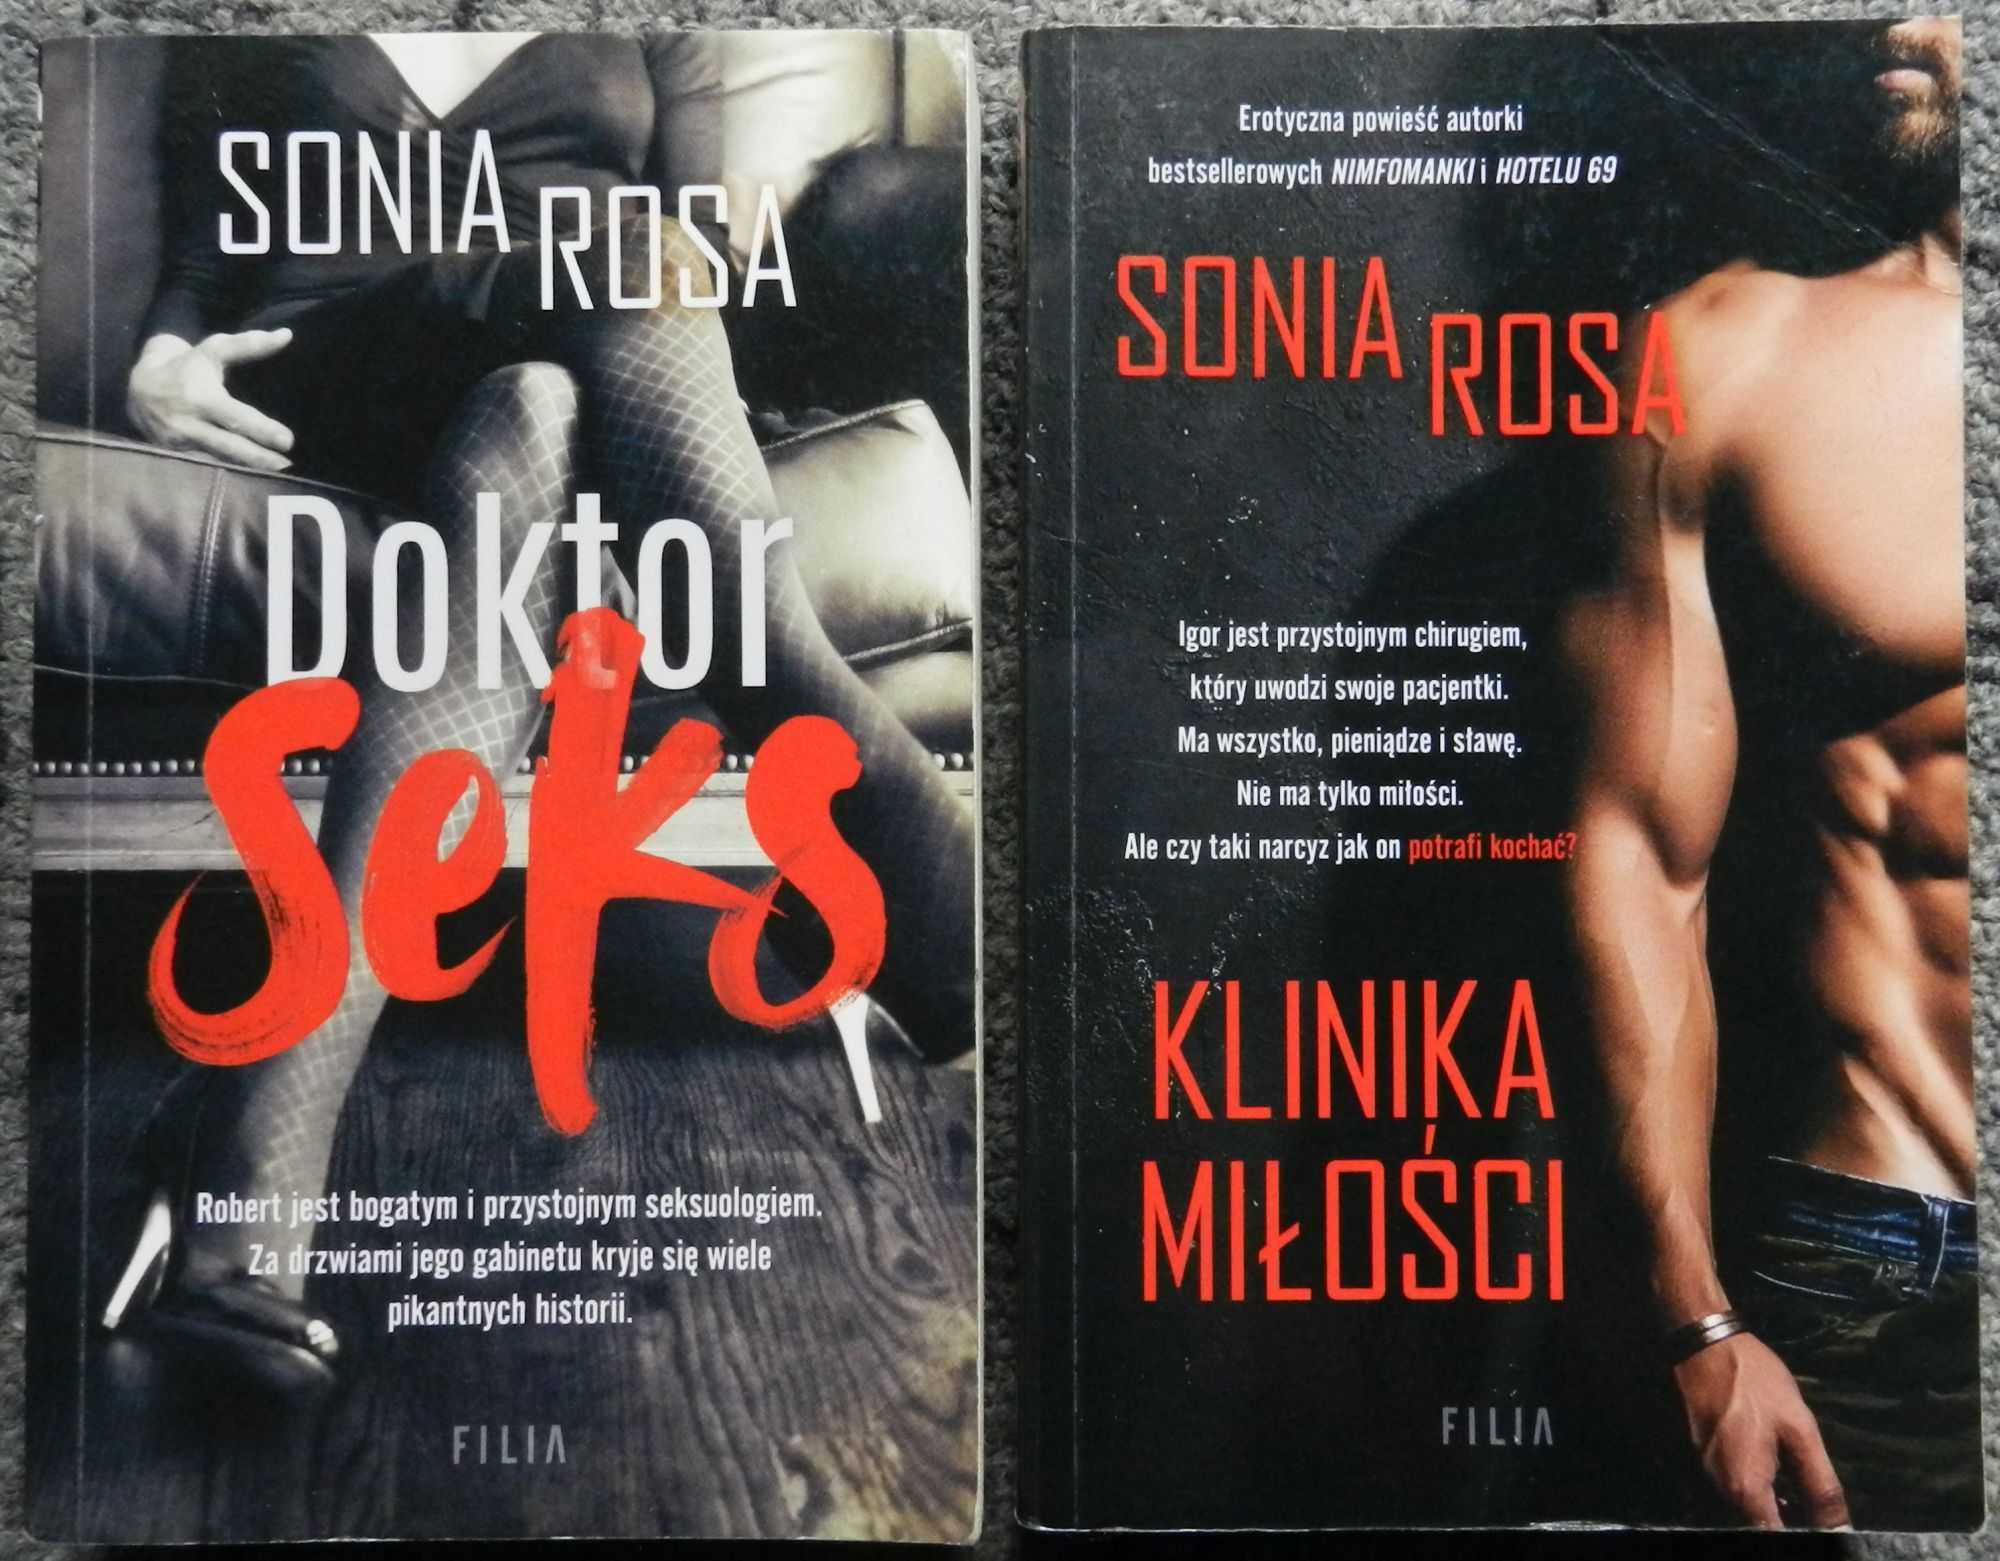 Rosa Sonia - Doktor seks, Klinika miłości, pocket, lit. erotyczna